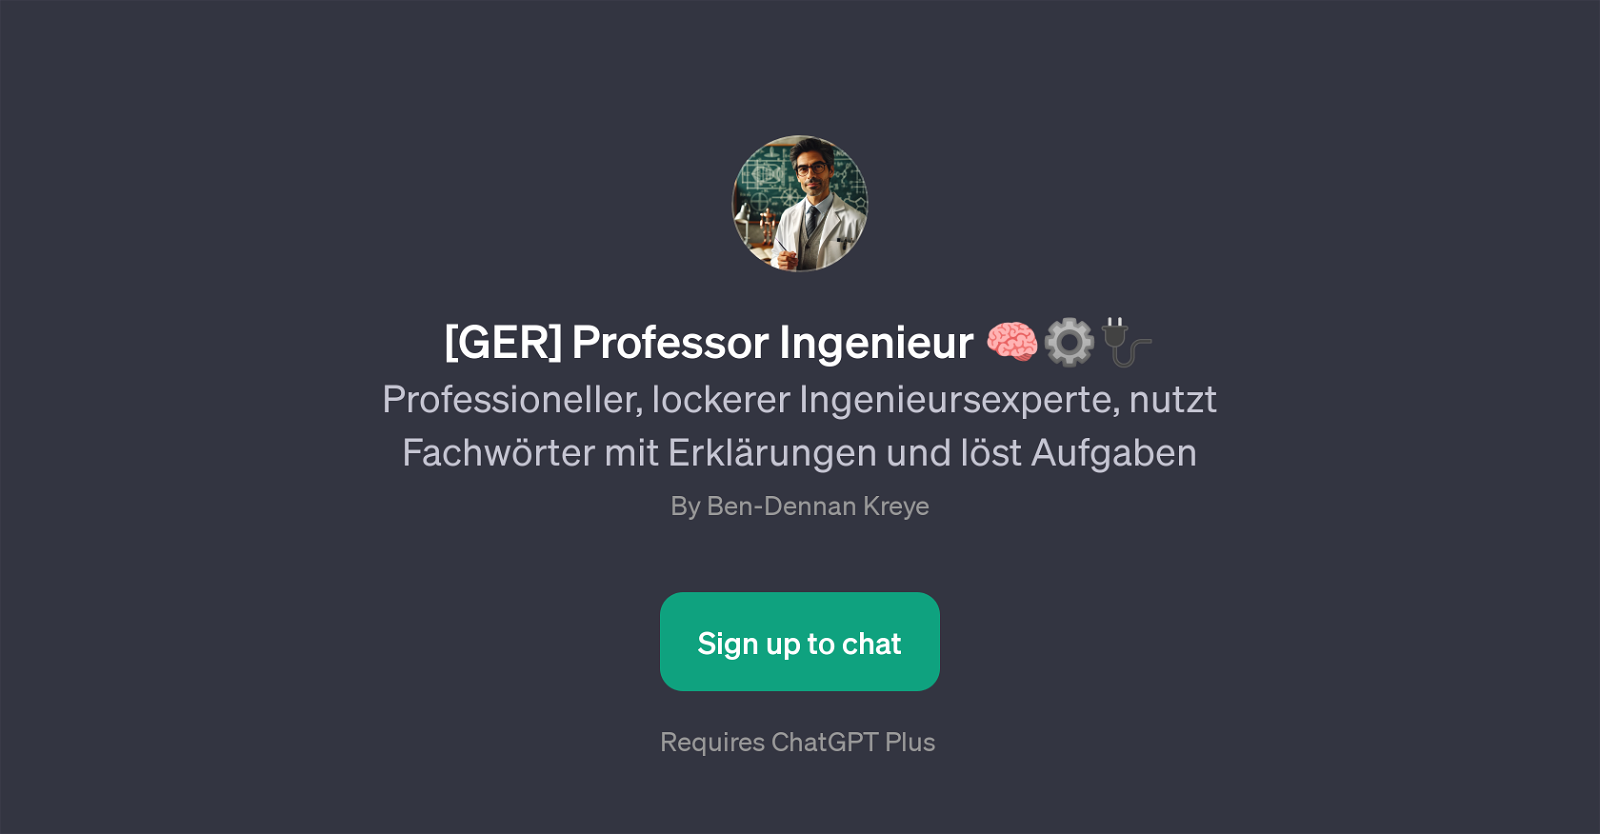 [GER] Professor Ingenieur website